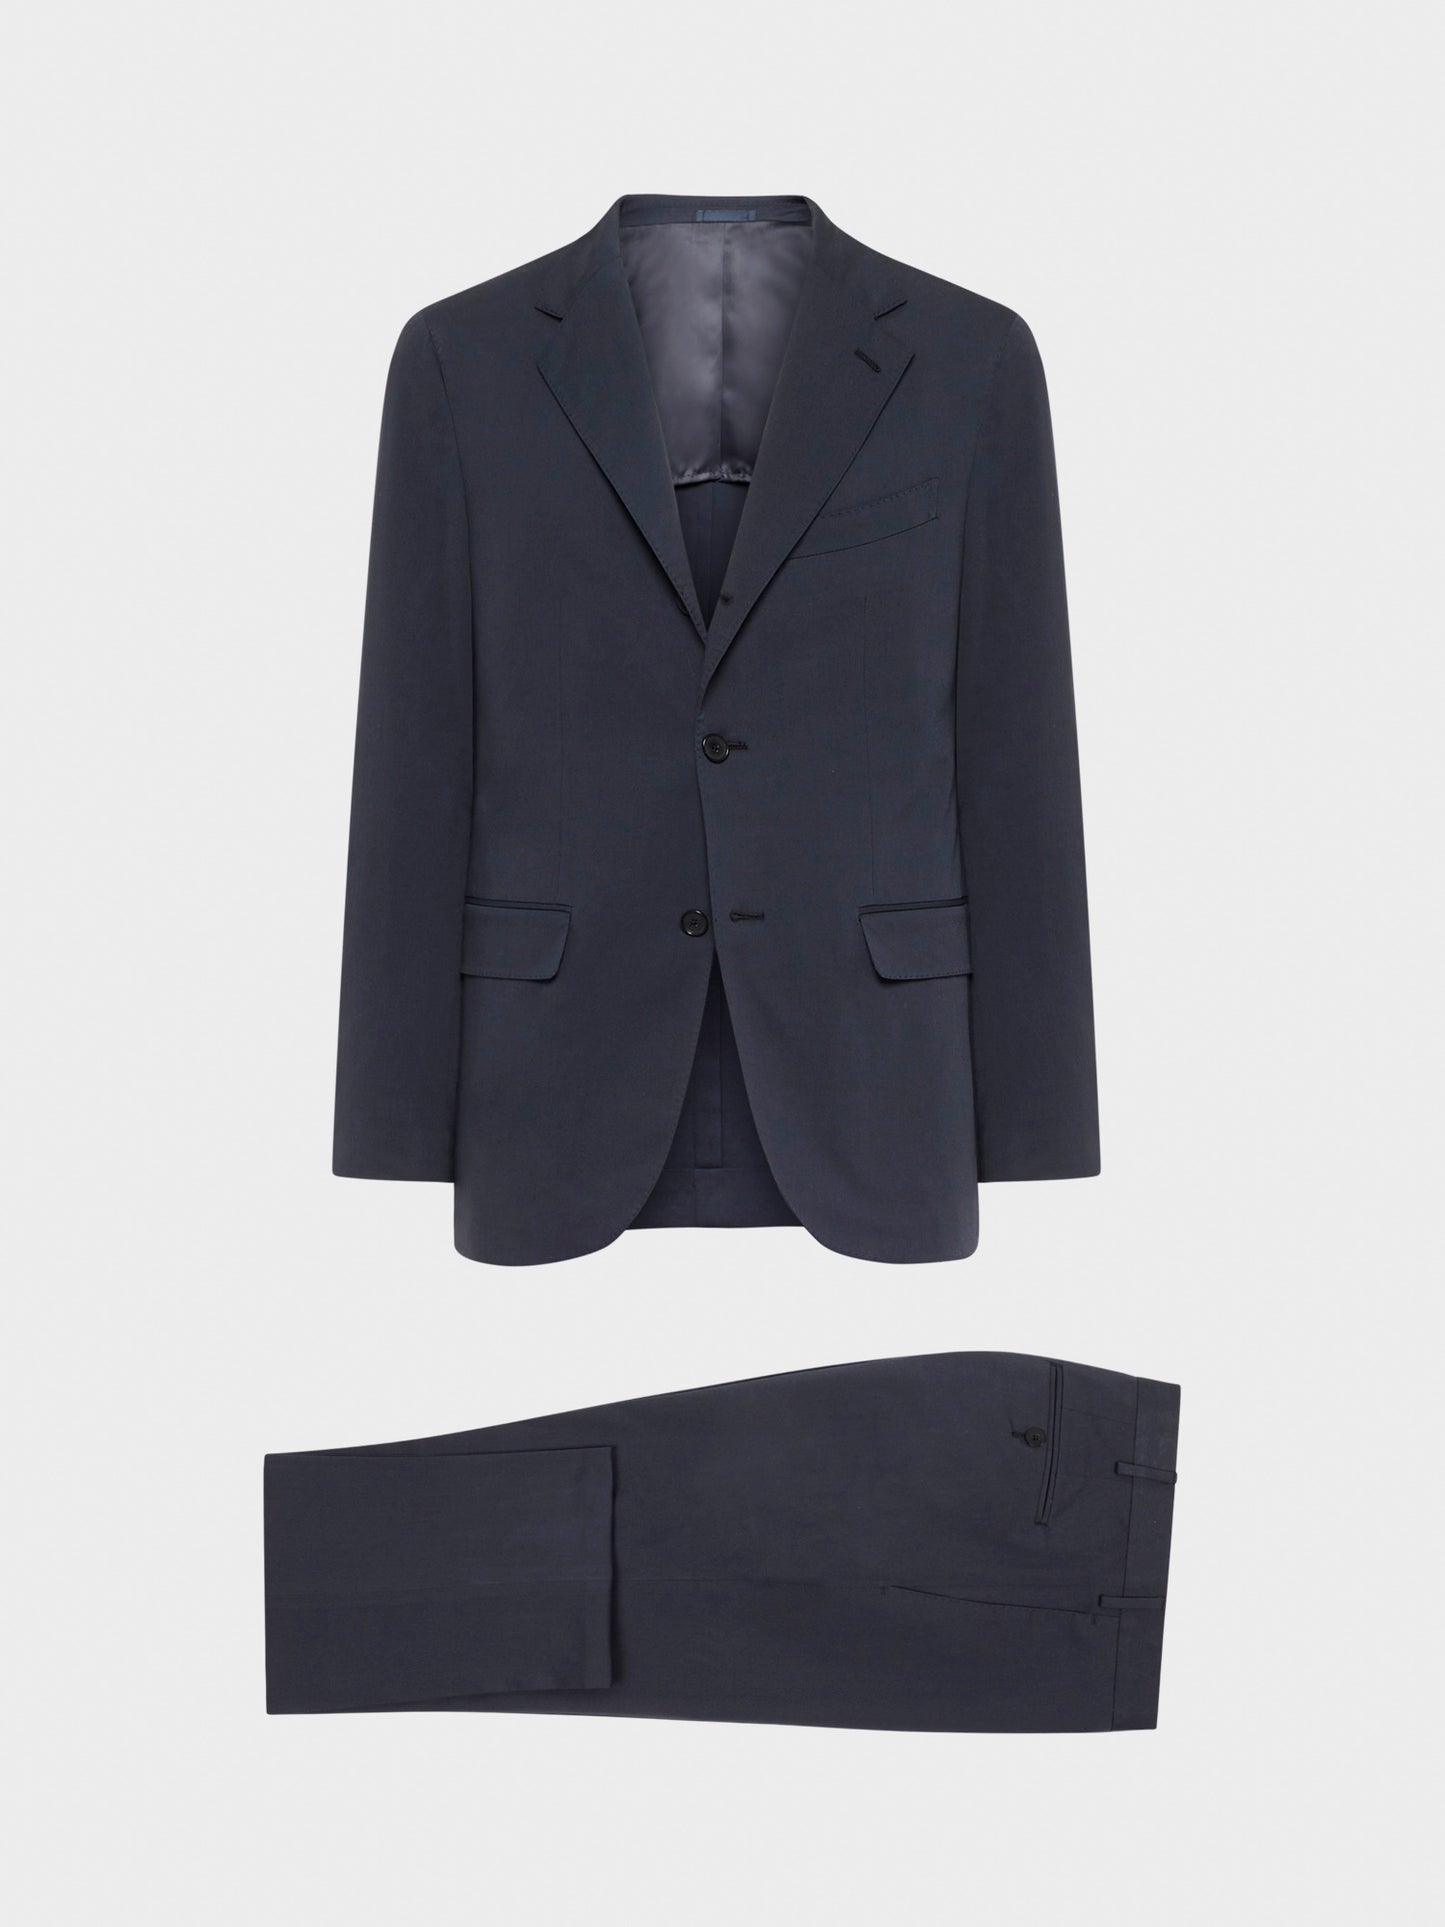 Caruso Menswear Abbigliamento Uomo Abito Aida in cotone-elastane blu drop 8R giacca e pantalone